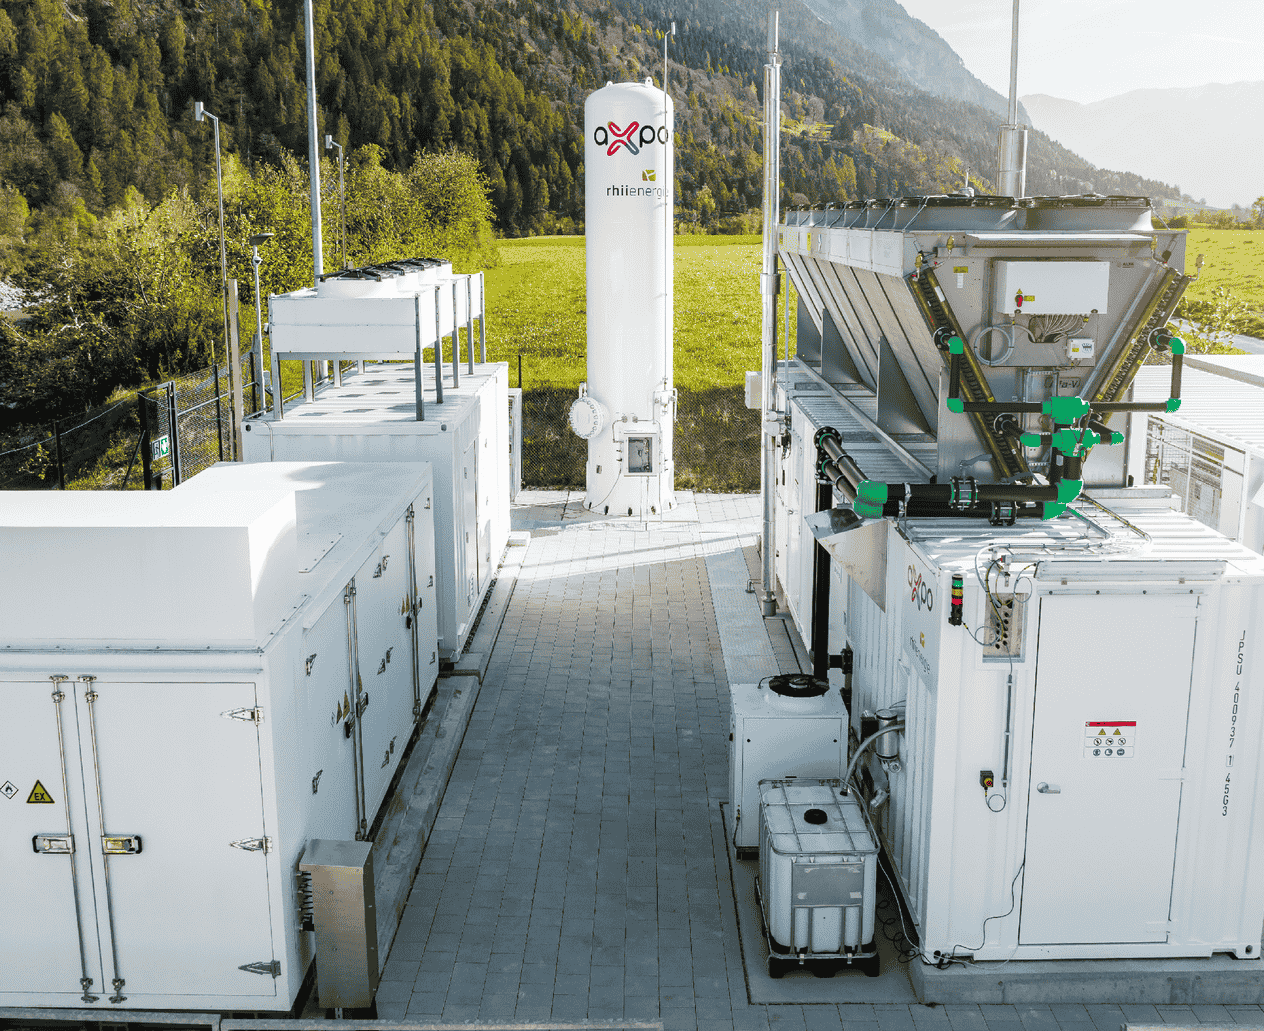 Axpo und Rhiienergie: Eröffnen grösste Produktionsanalage für grünen Wasserstoff der Schweiz